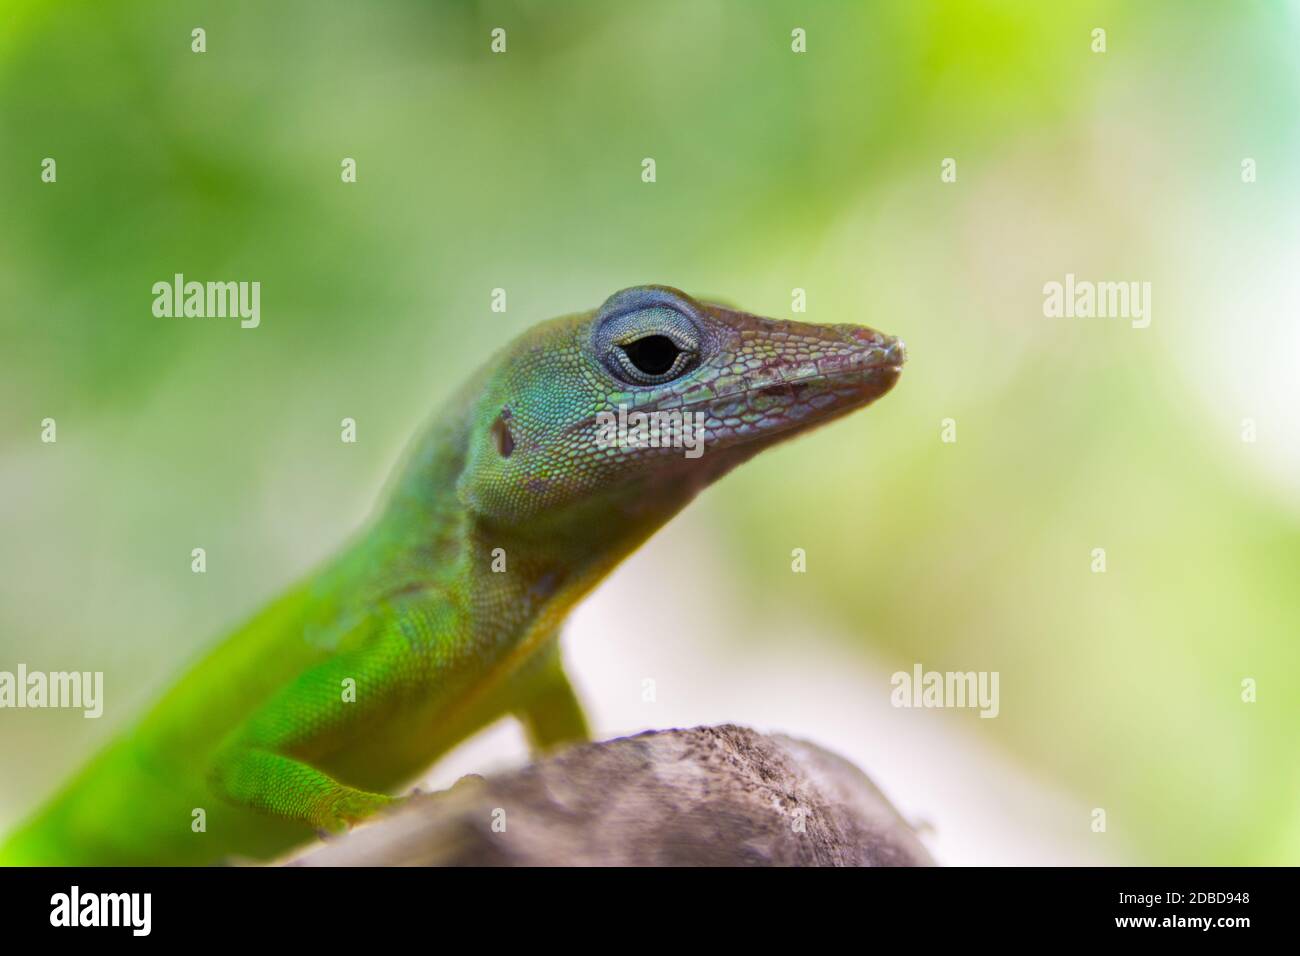 Anolis Marmoratus Speciosus lizard in Basse-Terre, Guadeloupe Stock Photo